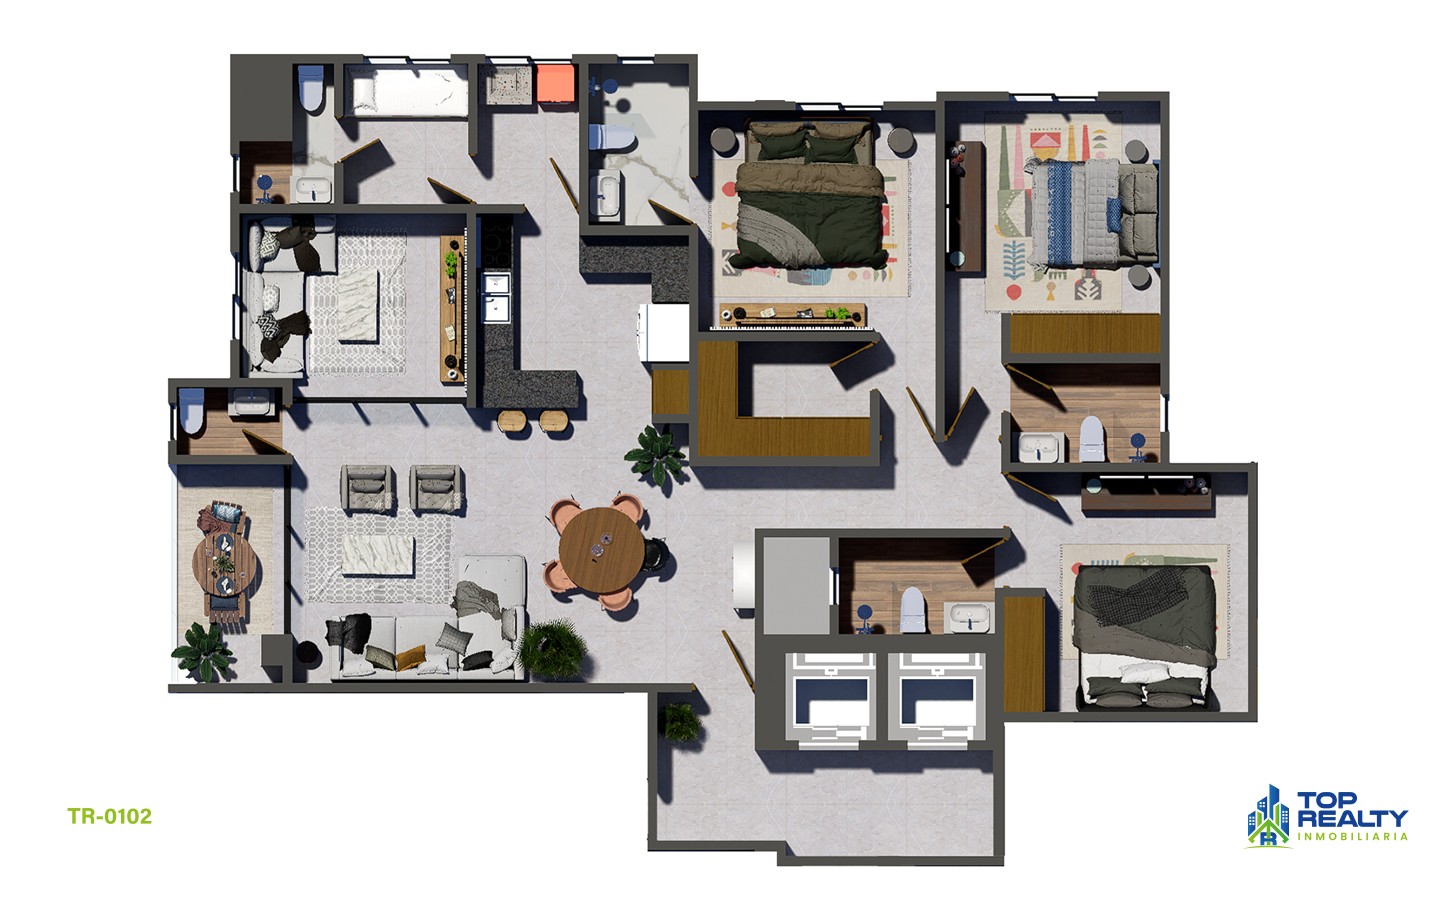 apartamentos - TR-0102-C  Elegancia Espaciosa: Espacios de 3 Hab. con Comodidades de Clase 5